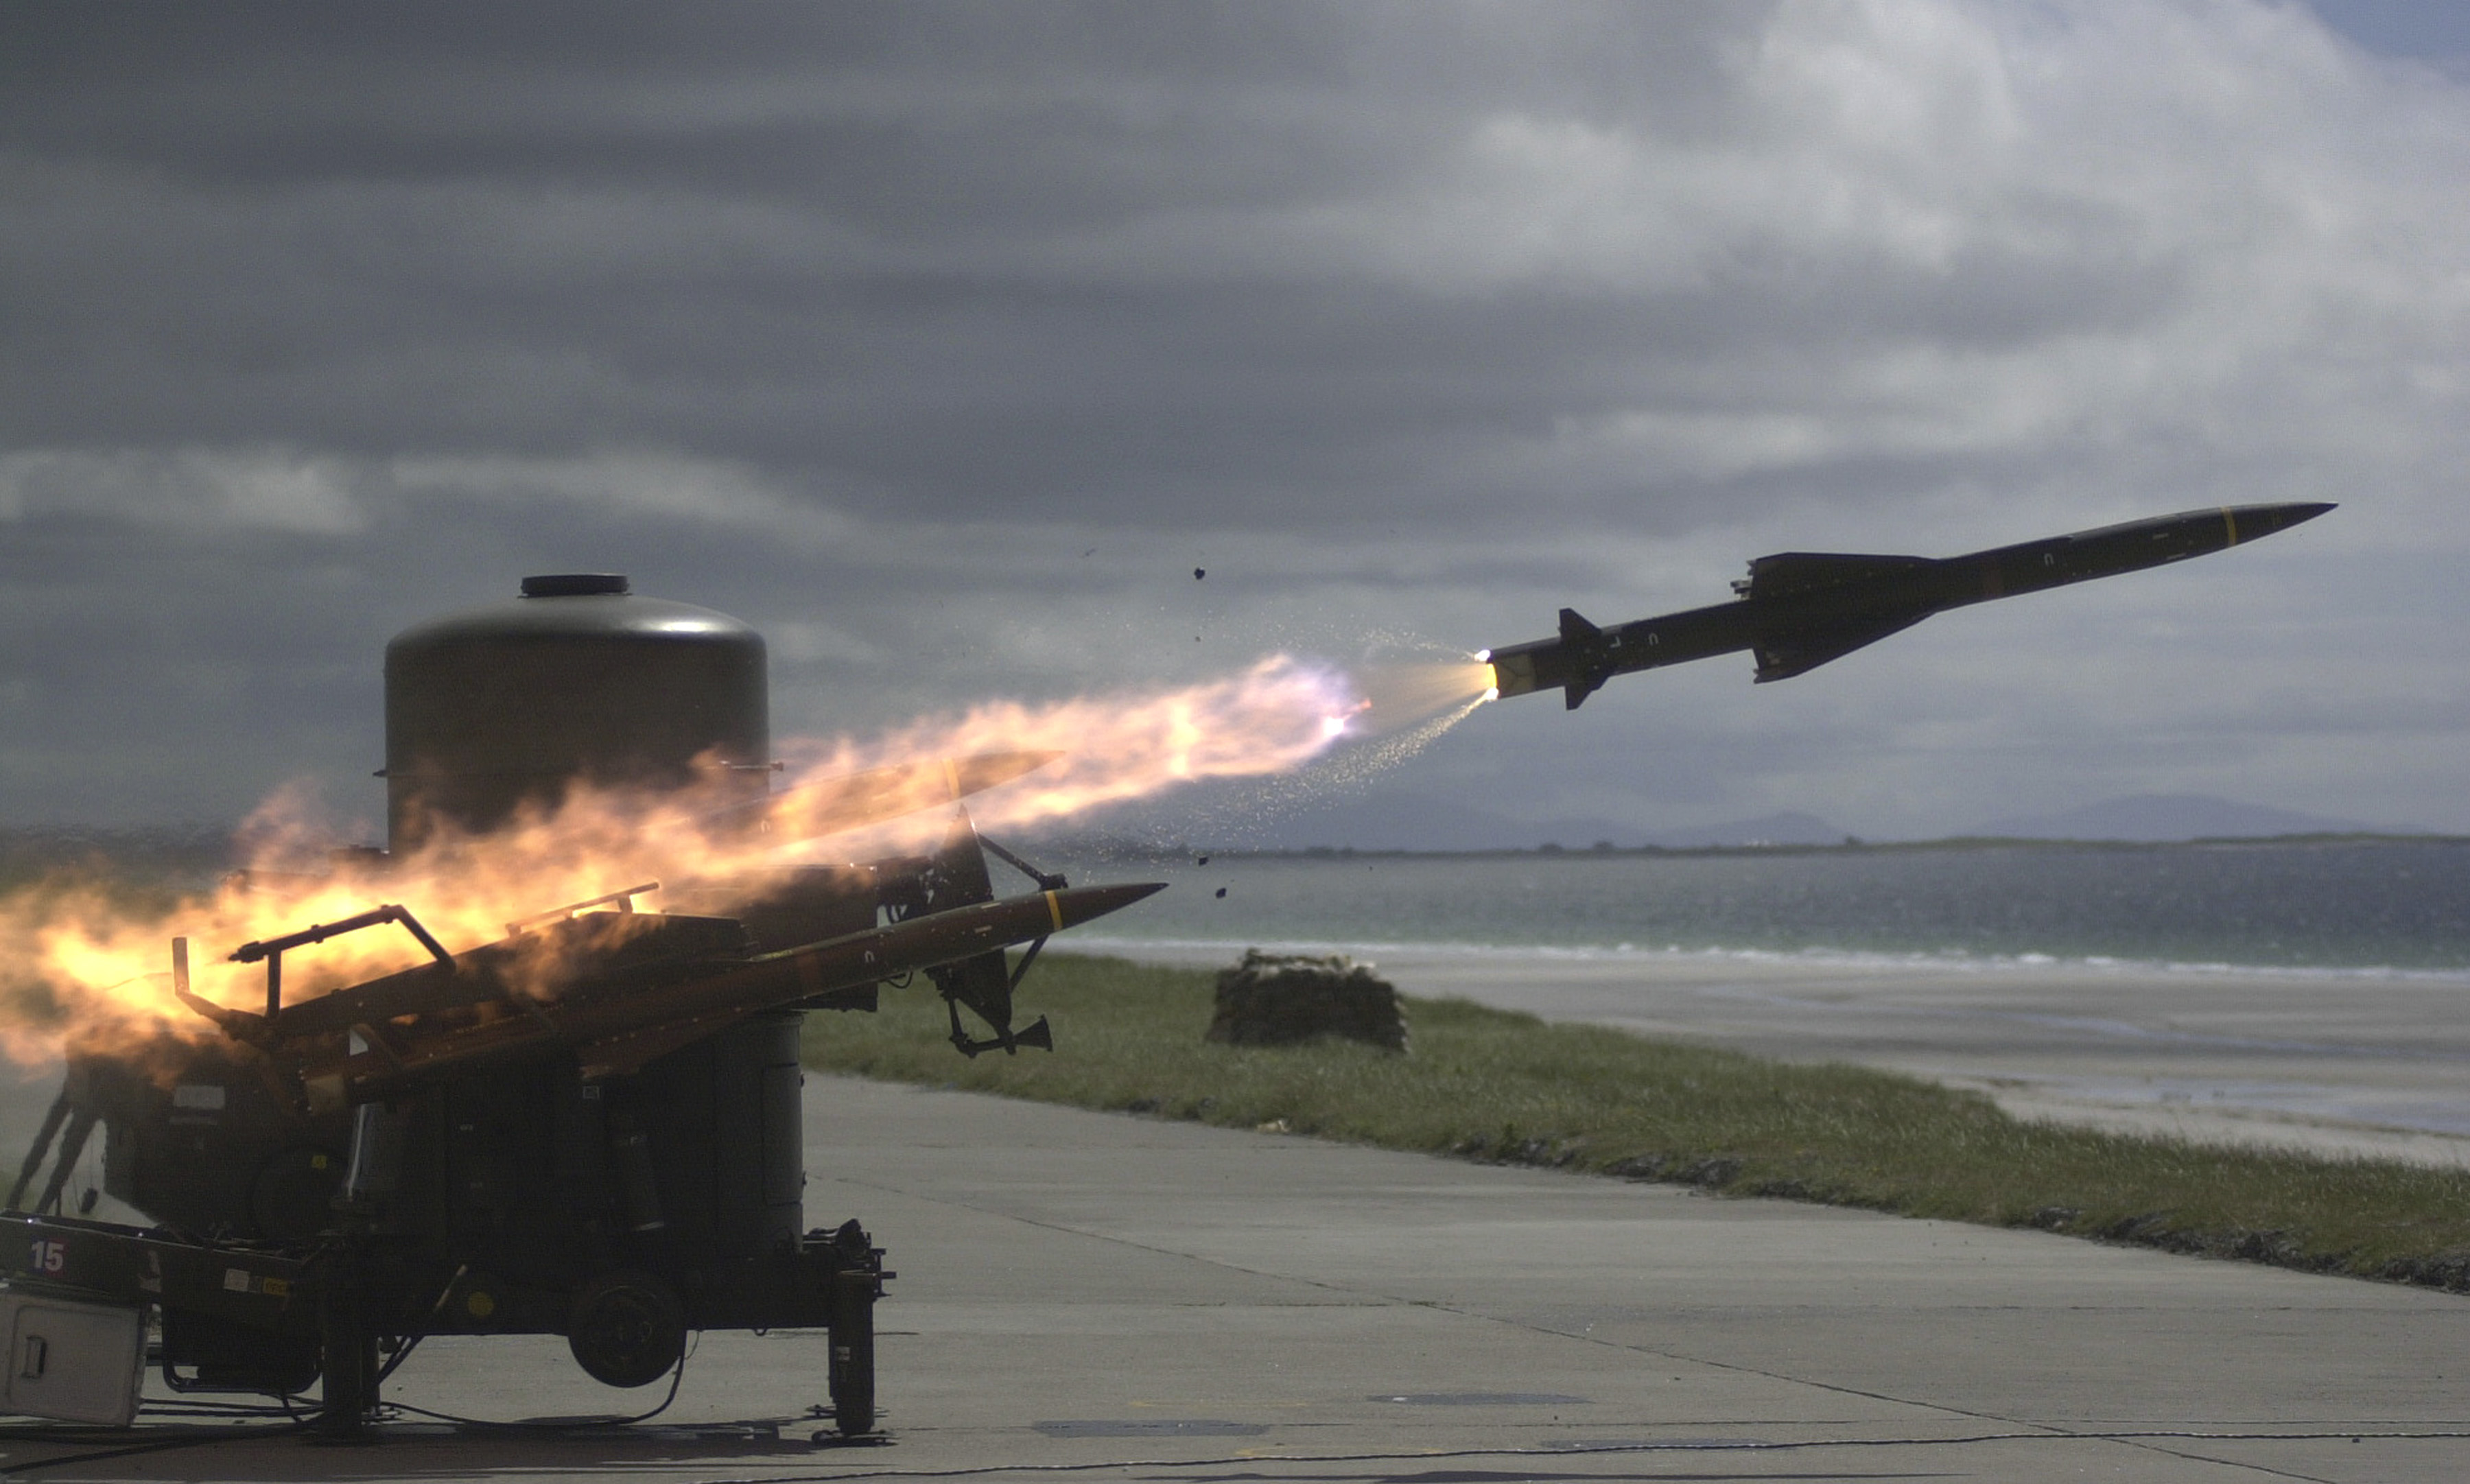 A_Rapier_missile_speeds_towards_its_target_during_a_live_firing._Scotland._17-06-2001_MOD_45137421.jpg